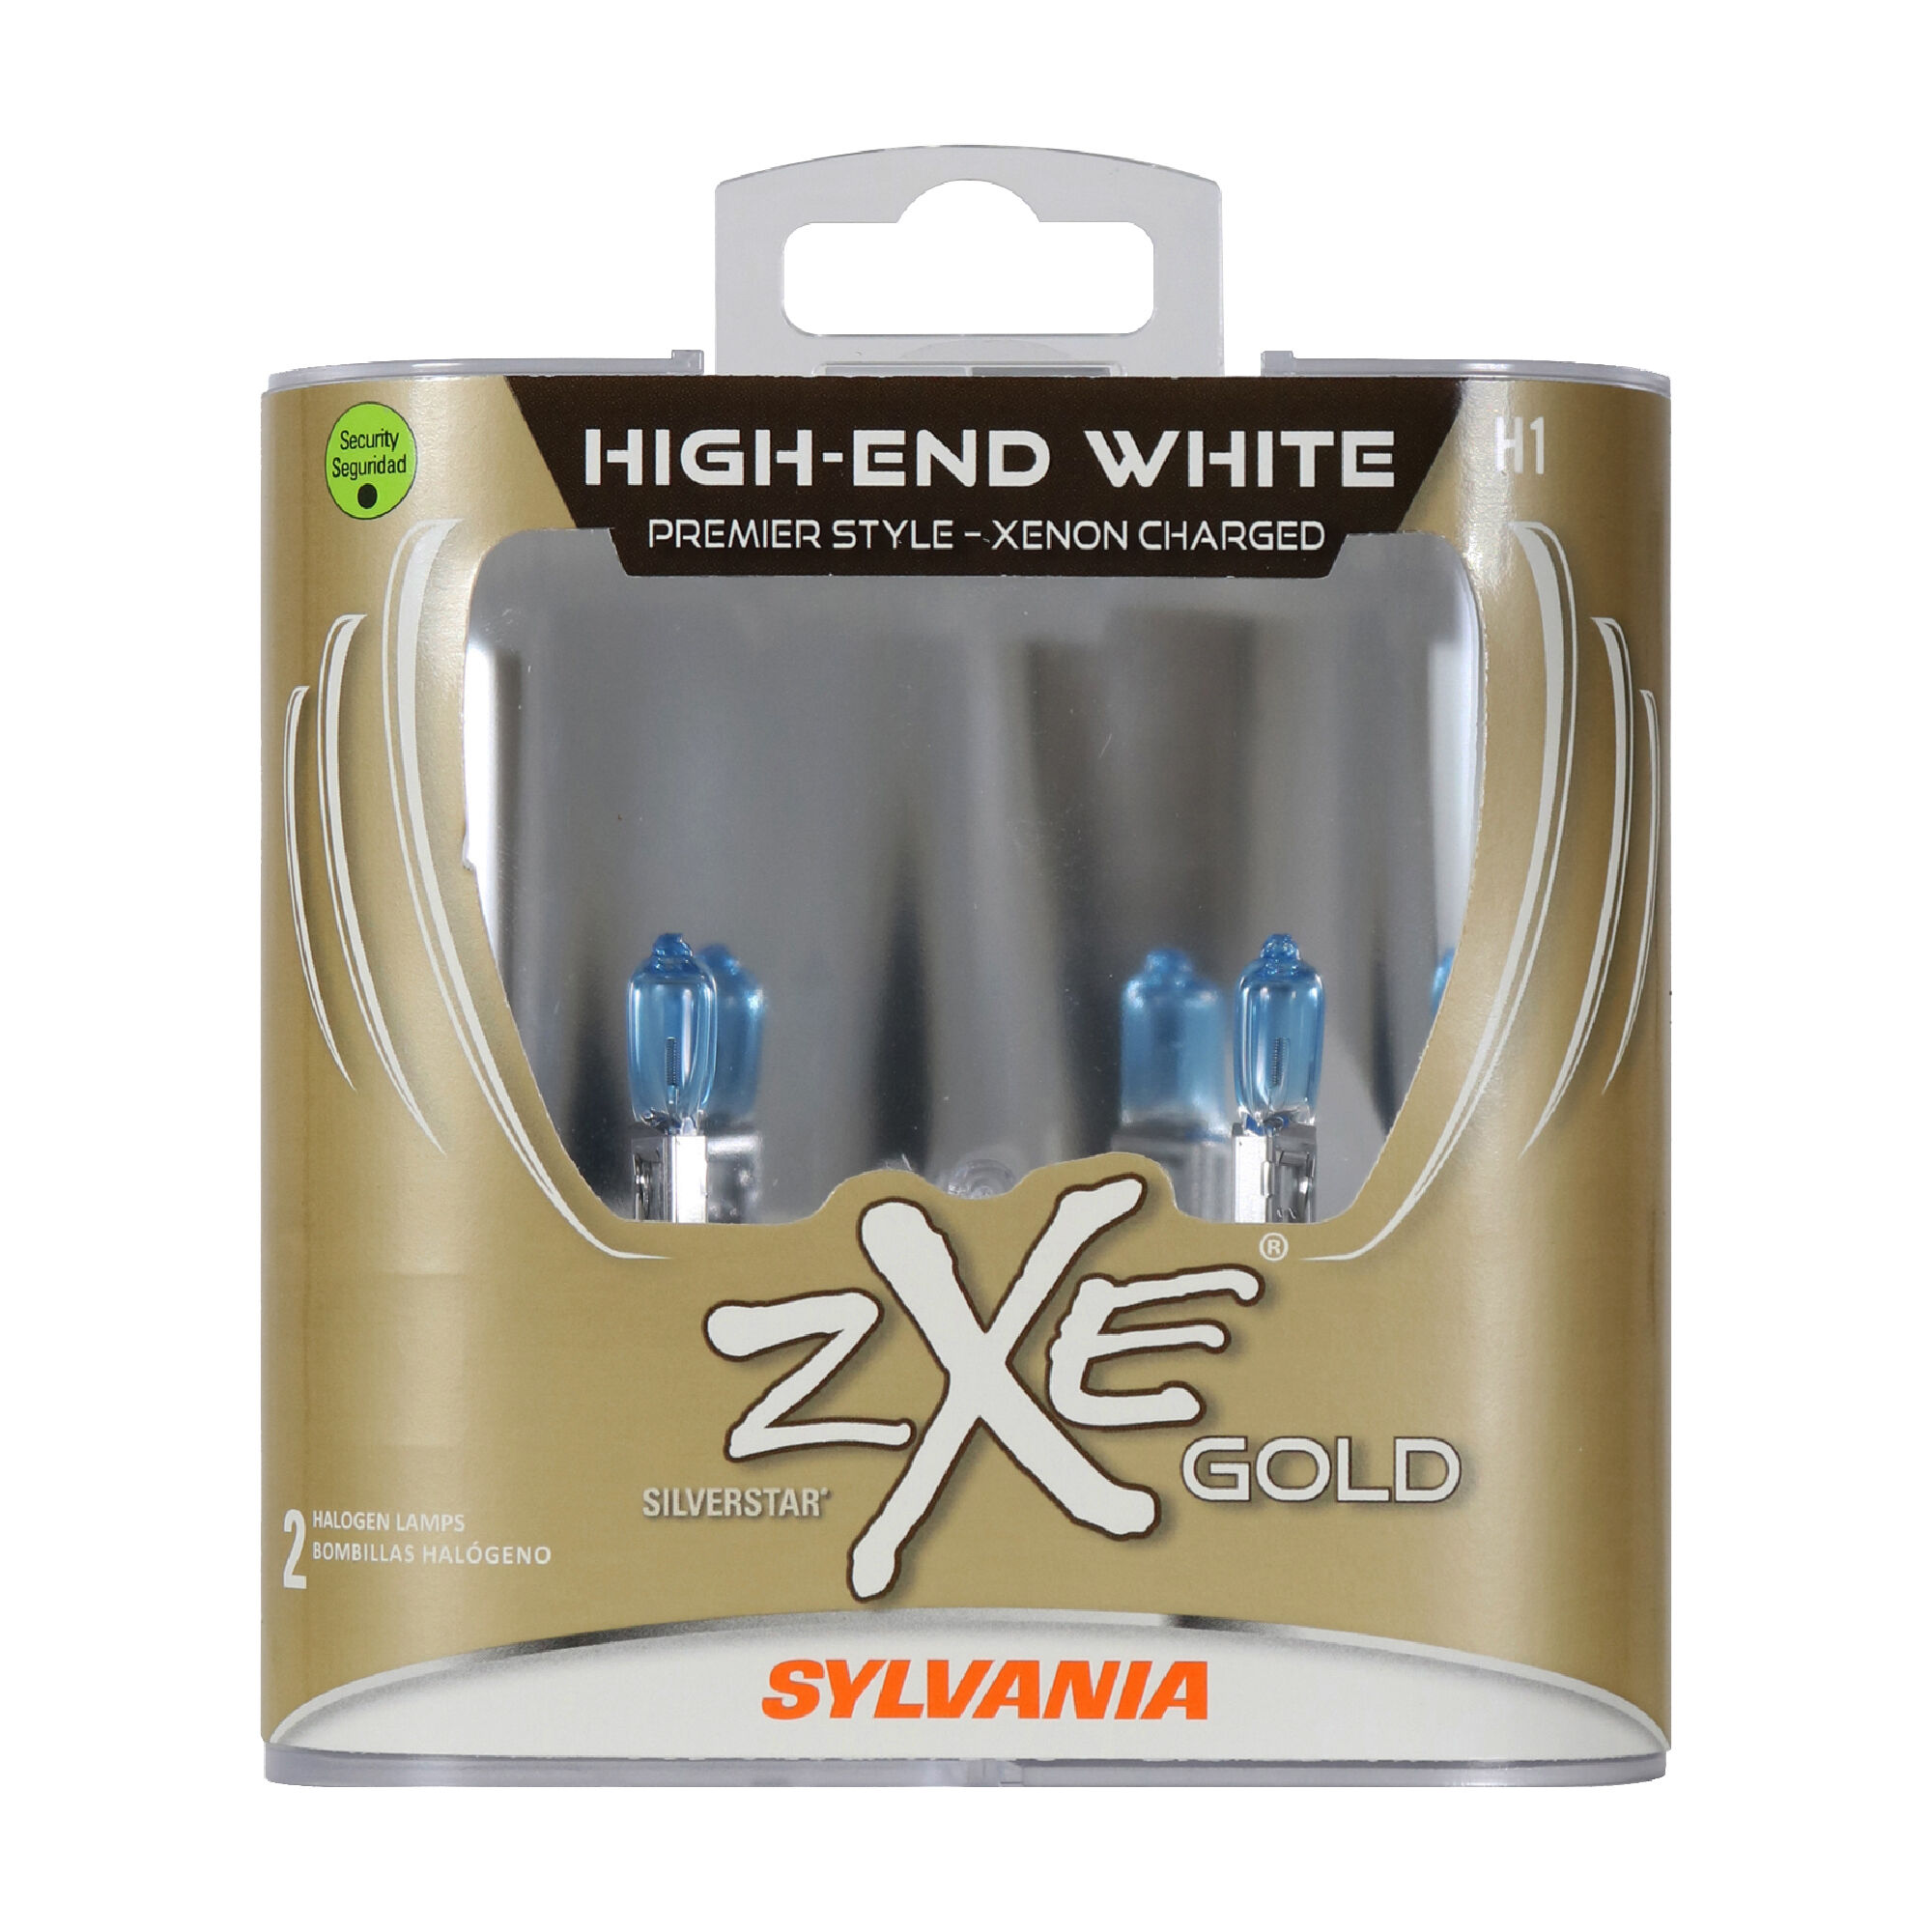 SYLVANIA H1 SilverStar zXe Gold Halogen Headlight Bulb, 2 Pack